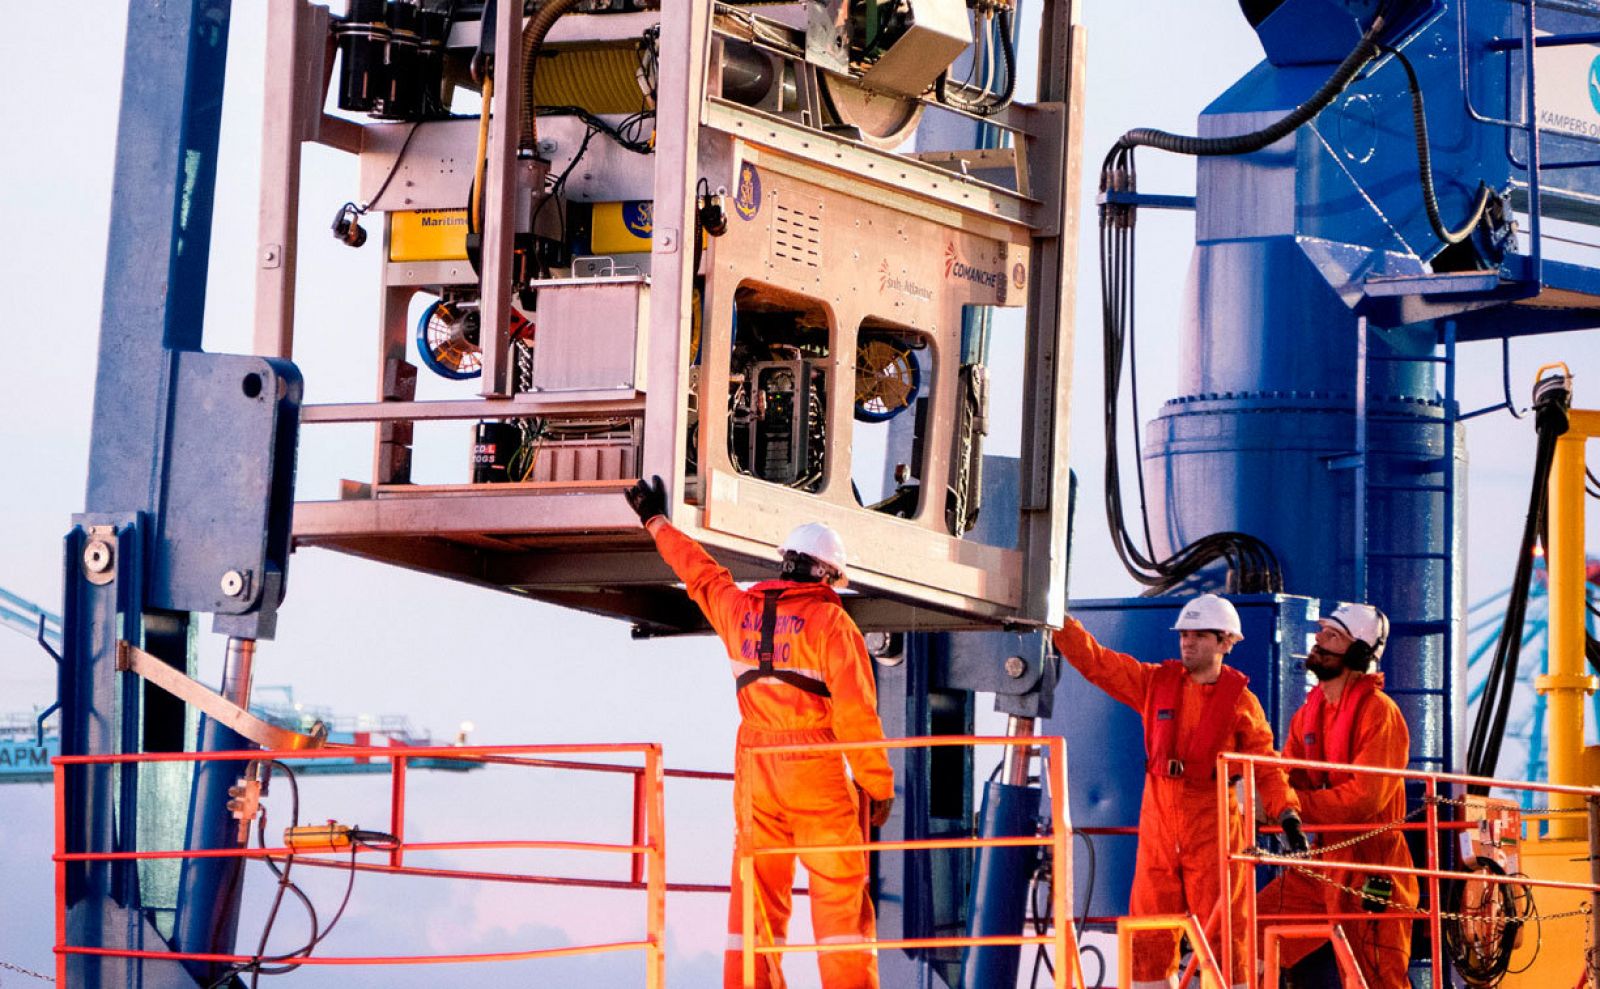 Varios operarios trabajan en la instalación del sonar del Instituto Español de Oceanografía y del robot submarino en el barco "Clara Campoamor", de Salvamento Marítimo